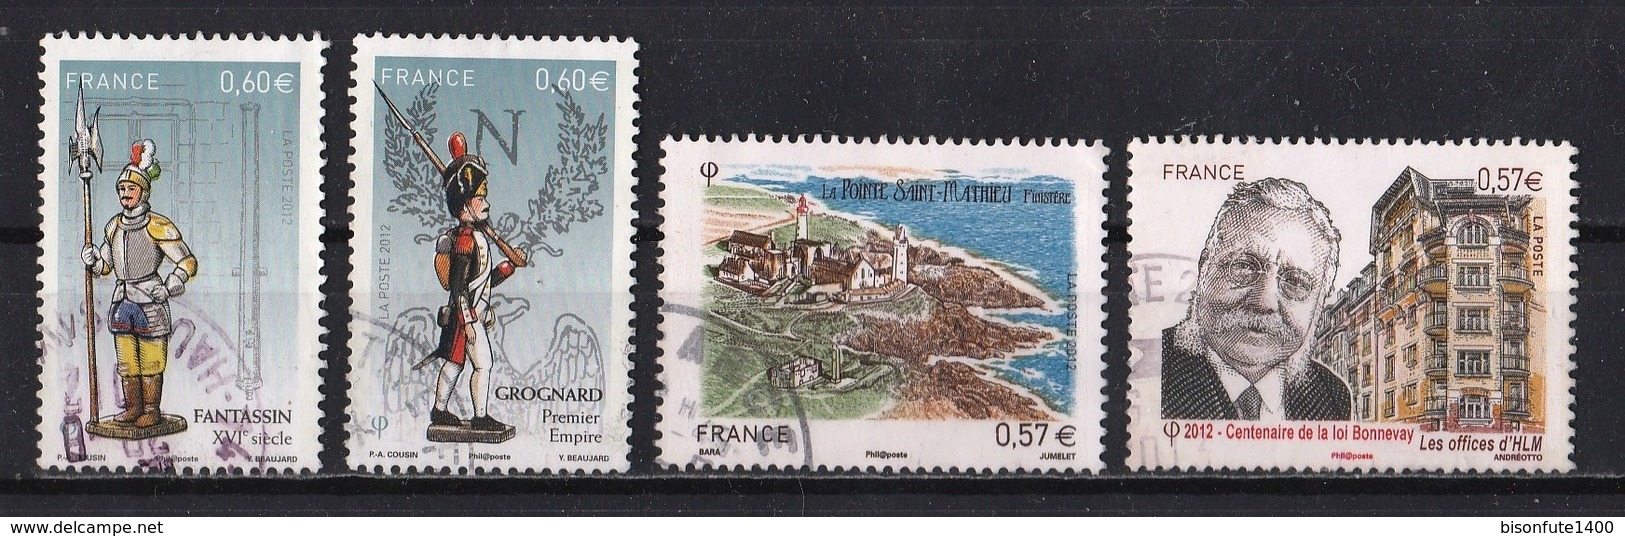 France 2012 : Timbres Yvert & Tellier N° 4631 - 4635 - 4654 - 4664 - 4665 - 4666 - 4667 - 4669 - 4679 Et 4710 Avec Obli. - Usati